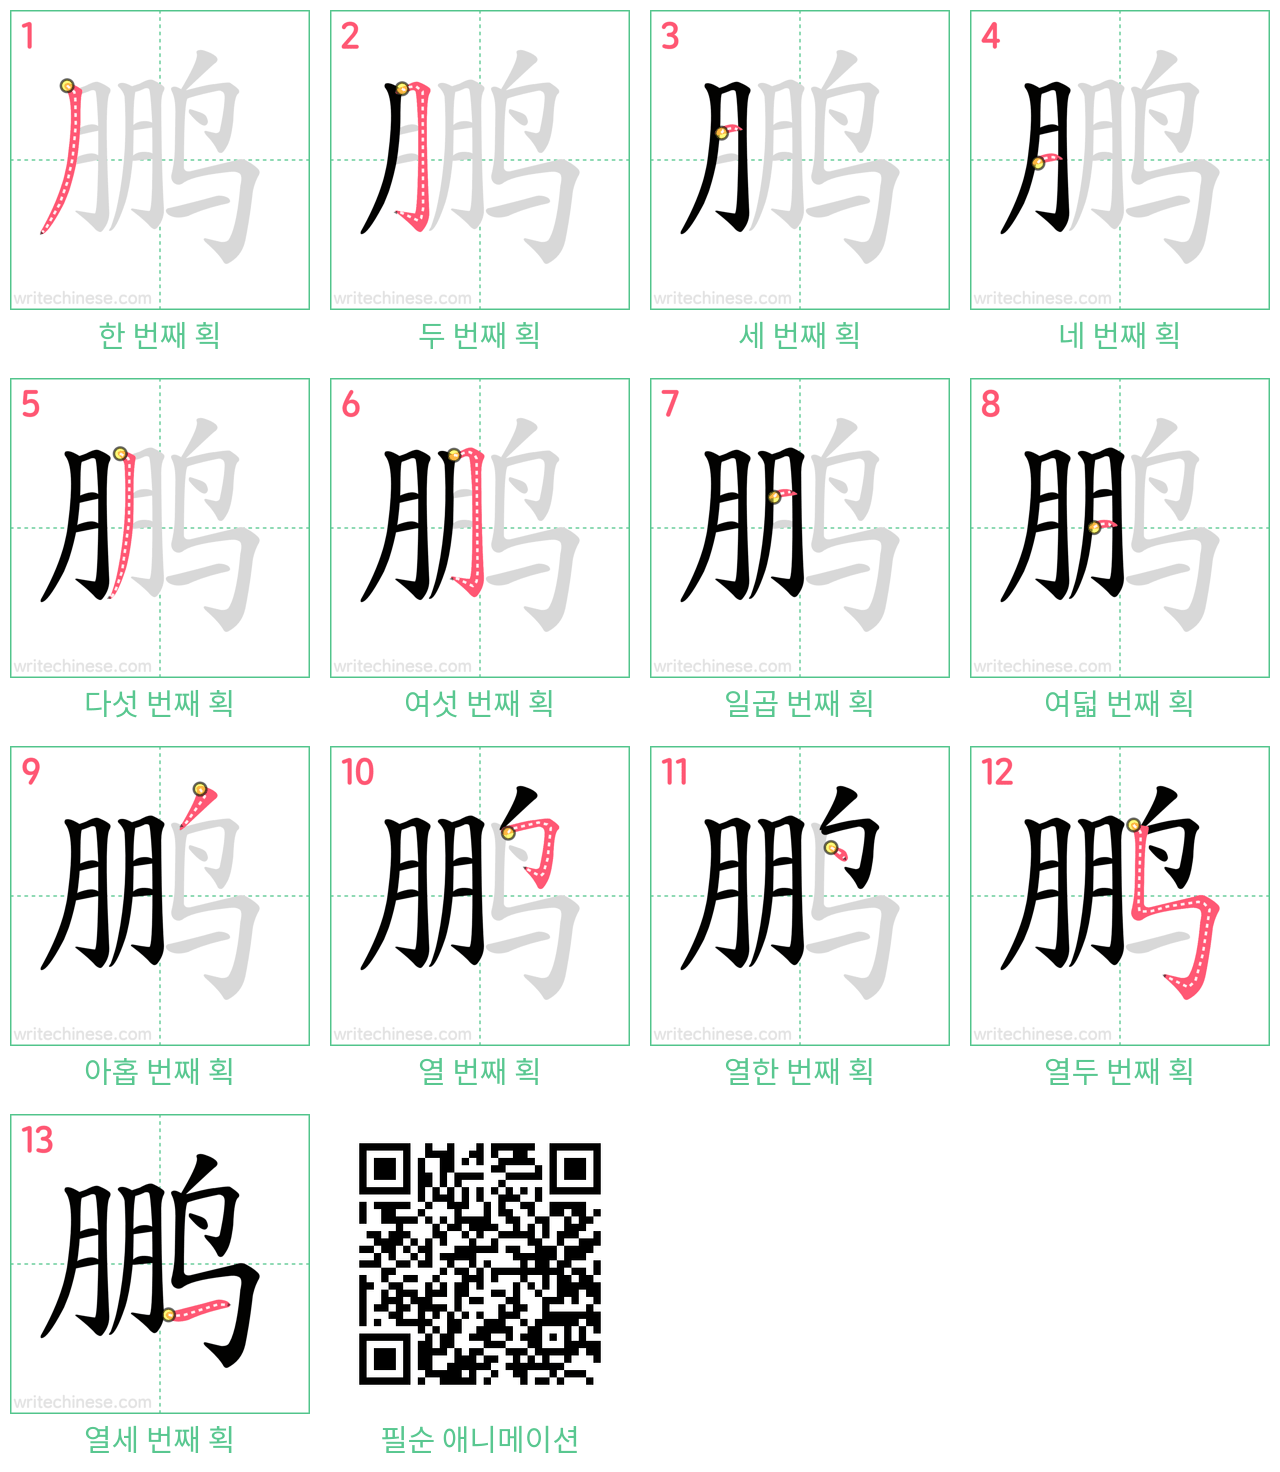 鹏 step-by-step stroke order diagrams